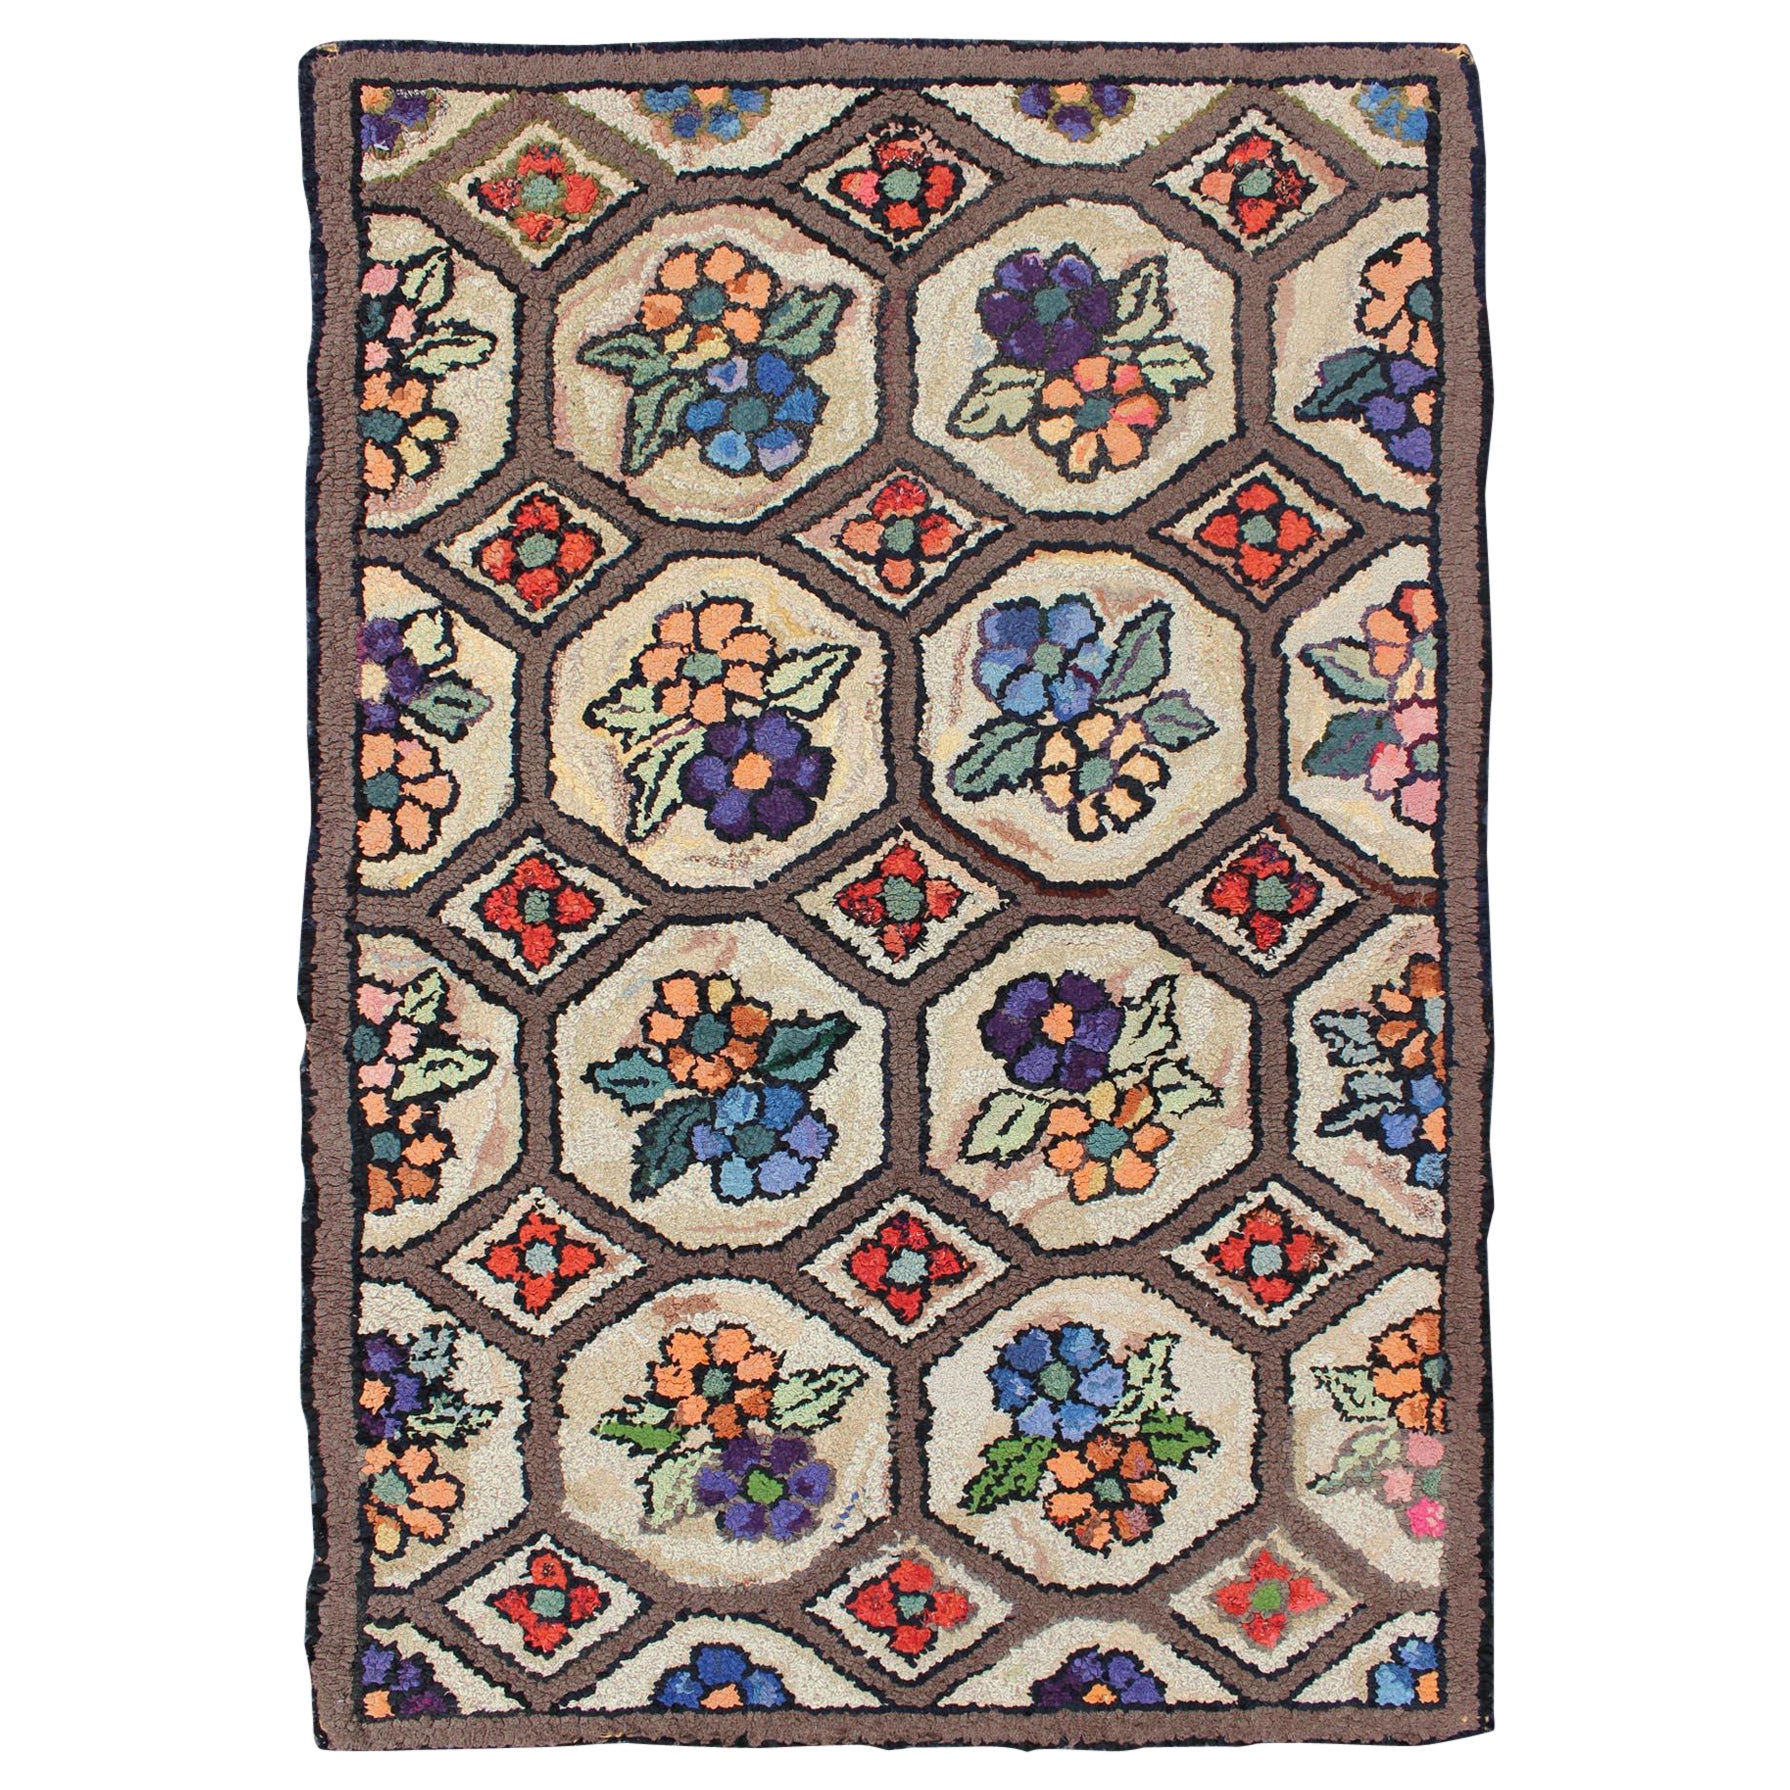 Hervorragender antiker amerikanischer Kapuzenteppich mit All-Over-Blumendesign